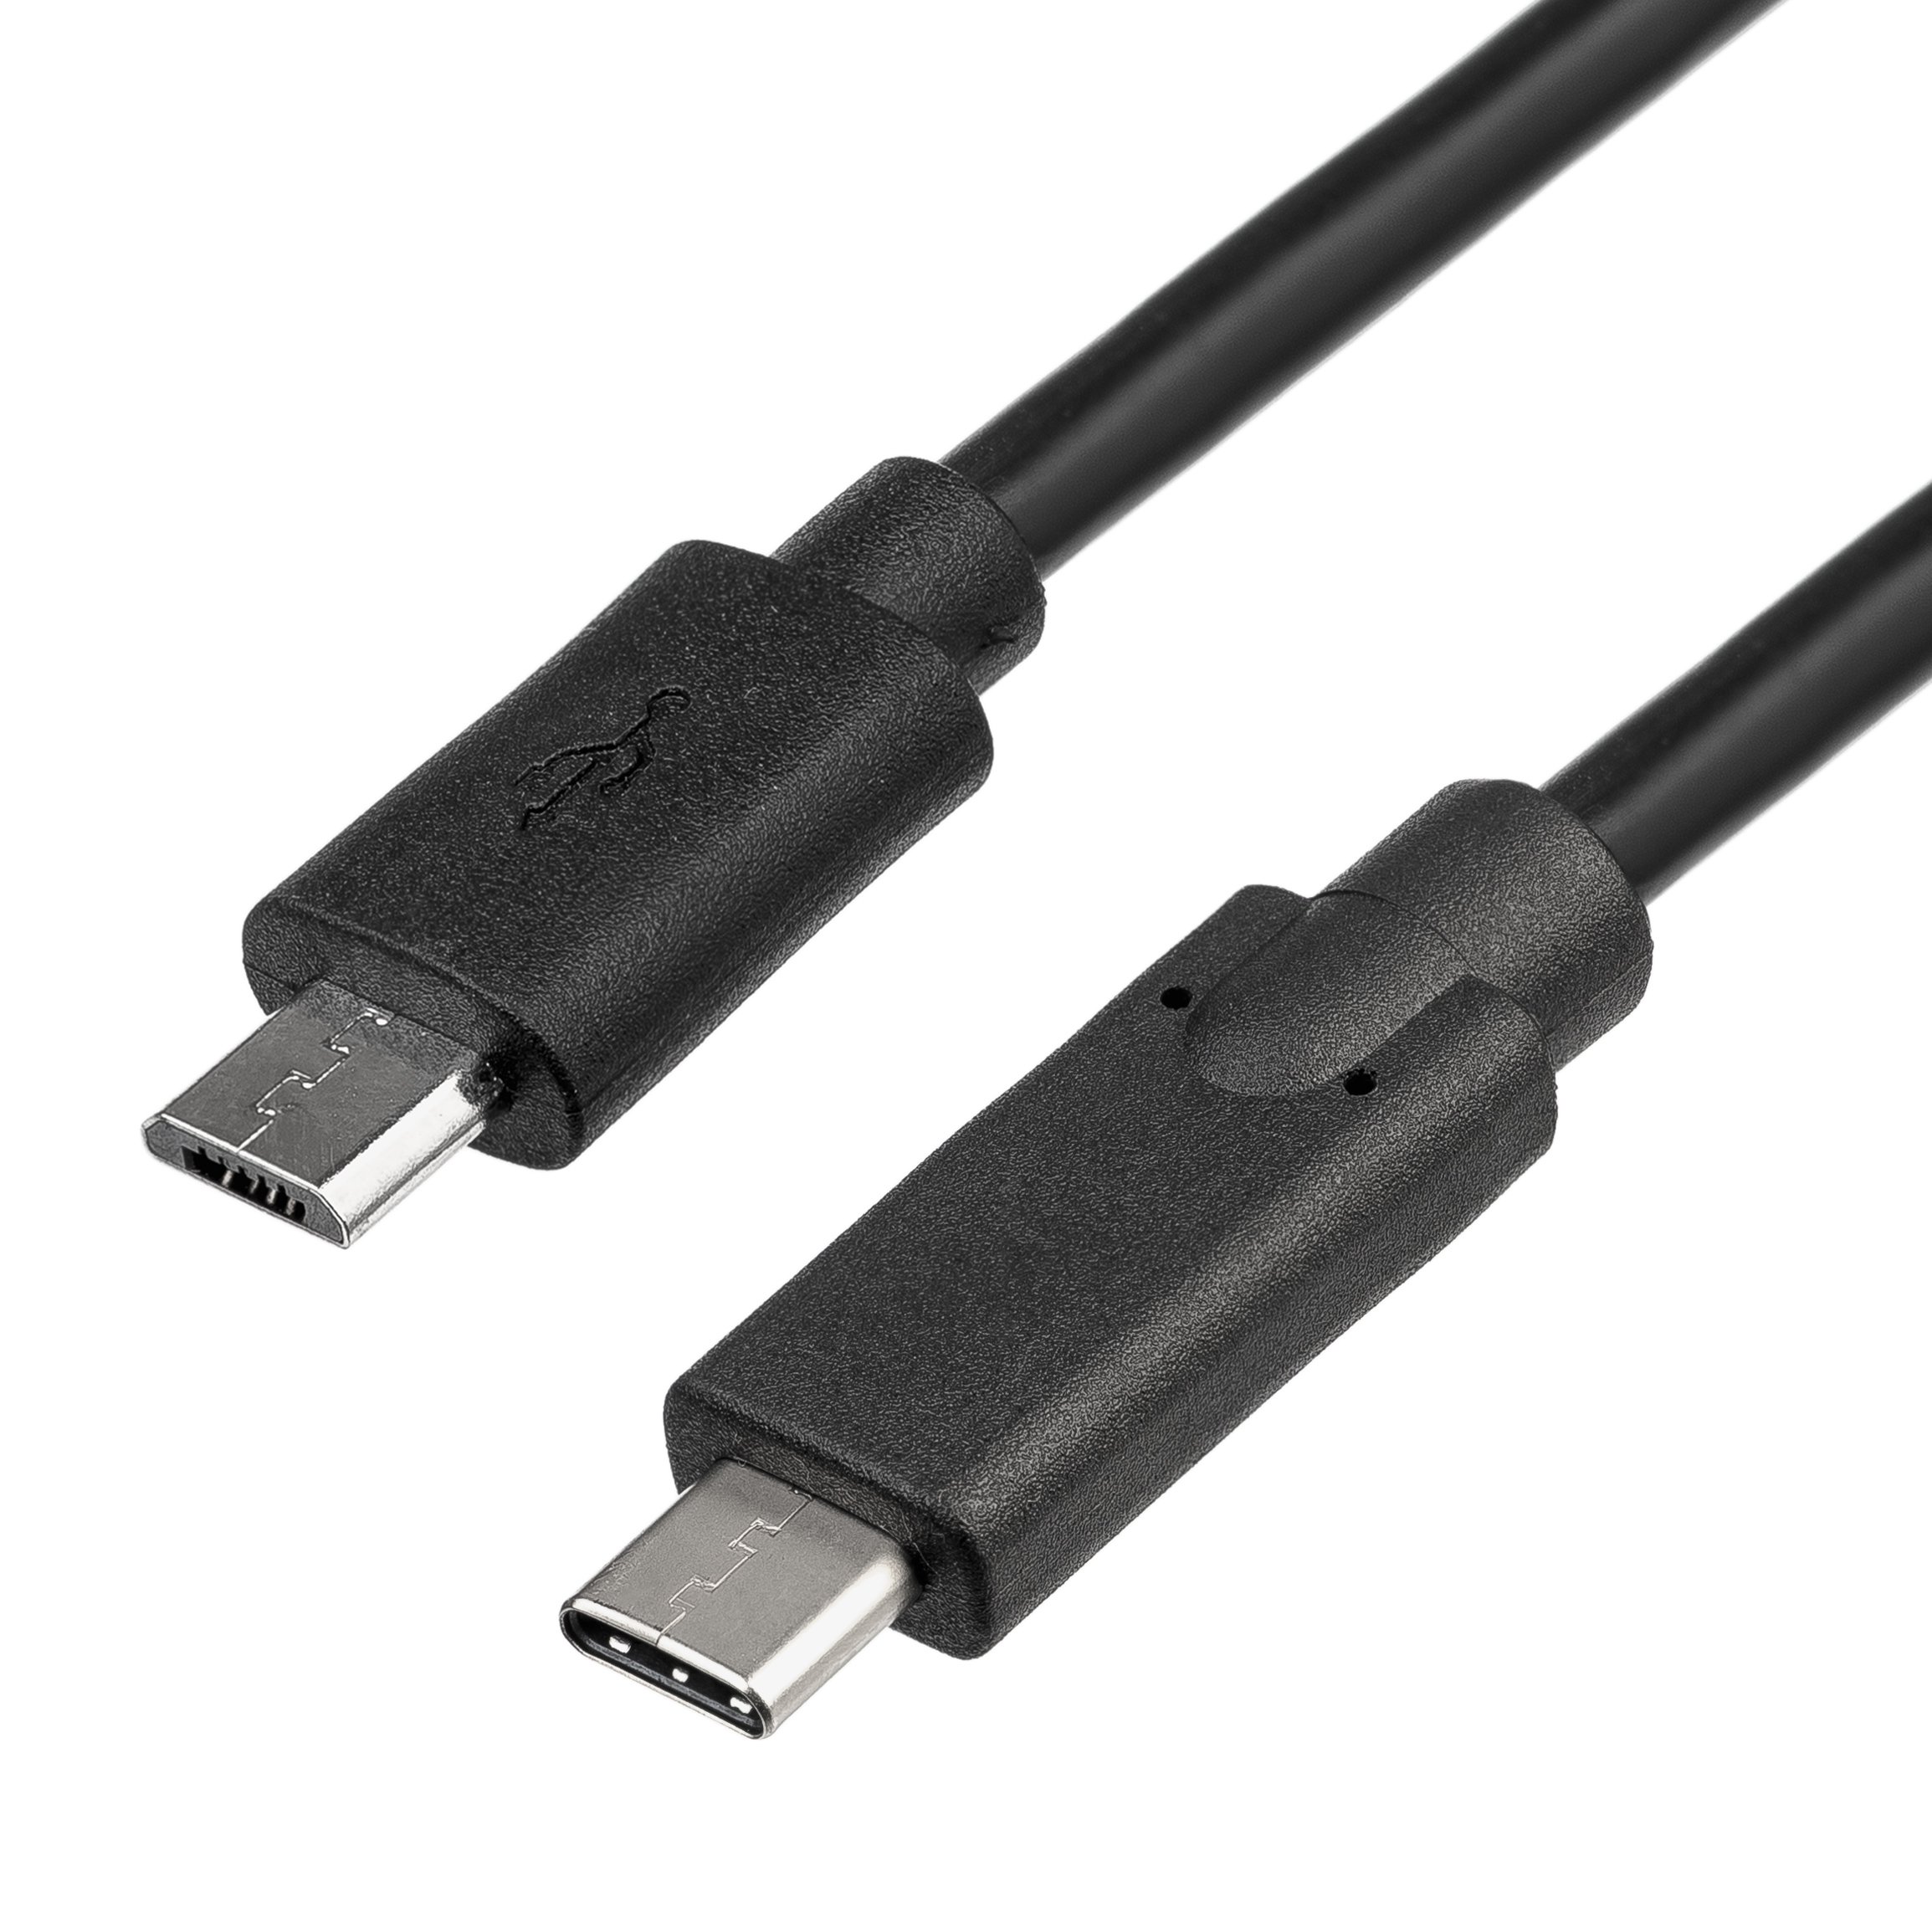 Cable USB C / USB Micro B 1m AK-USB-16